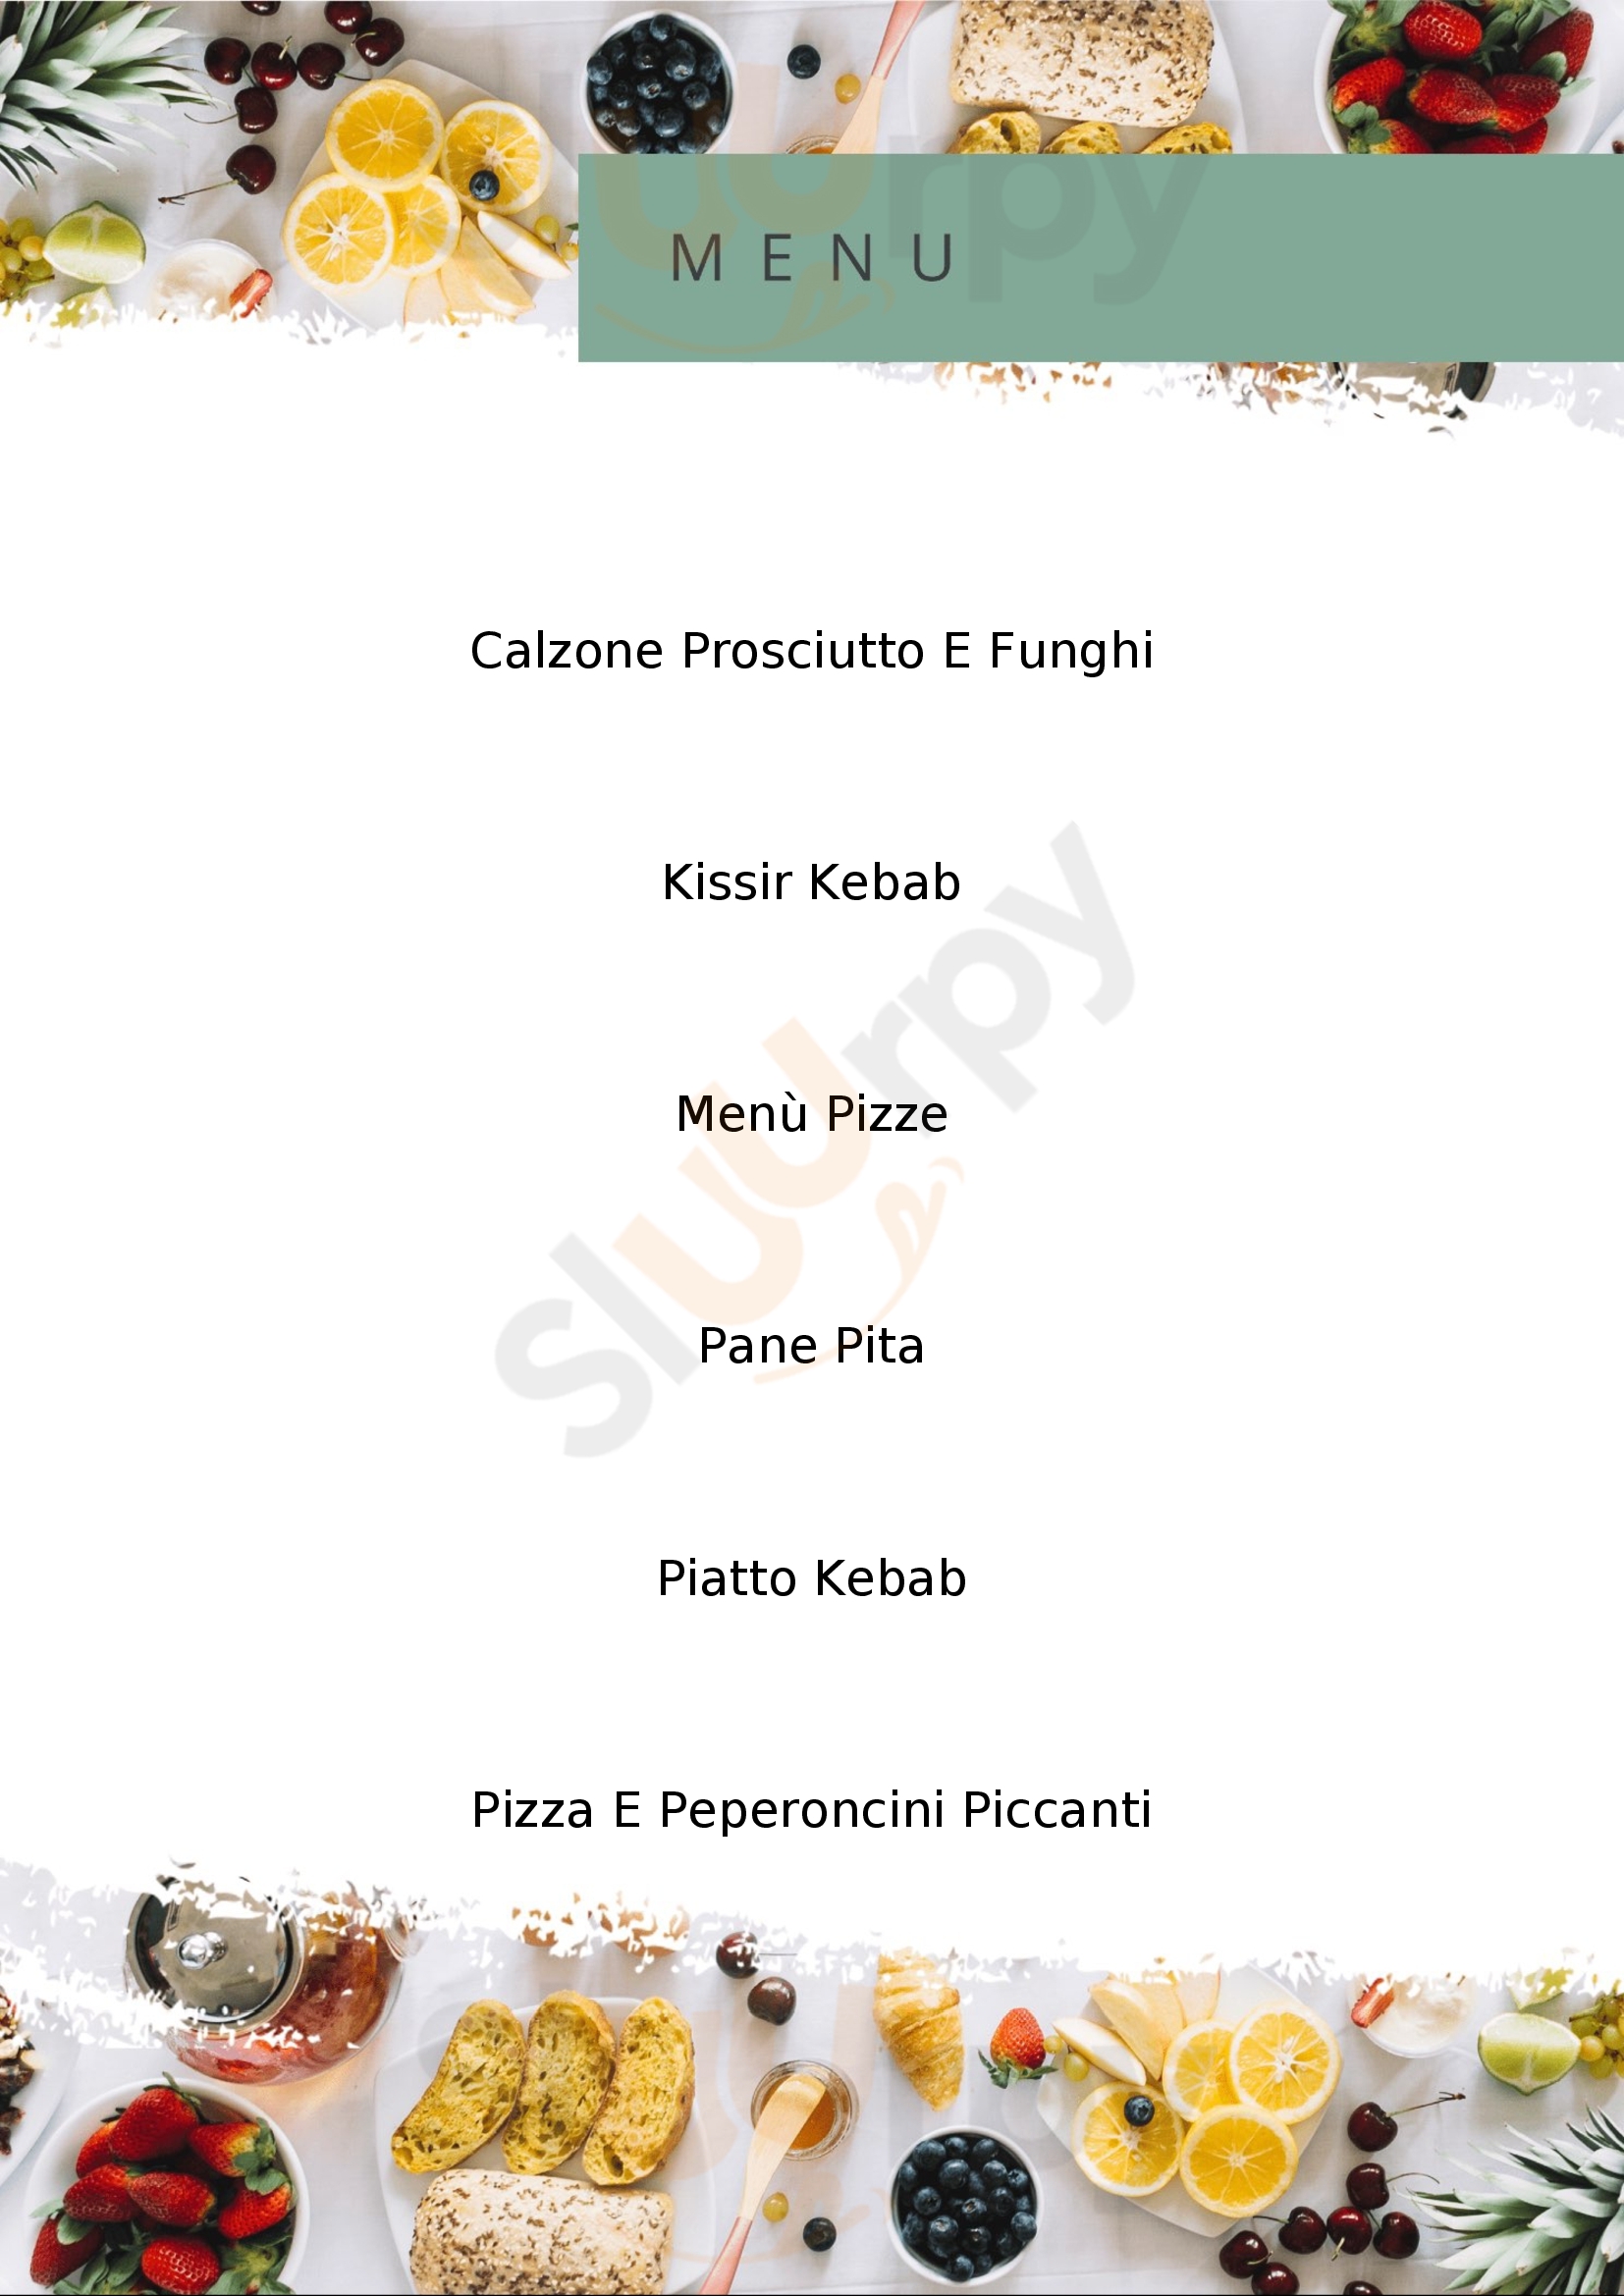 Istambul Kebab Cervignano del Friuli menù 1 pagina